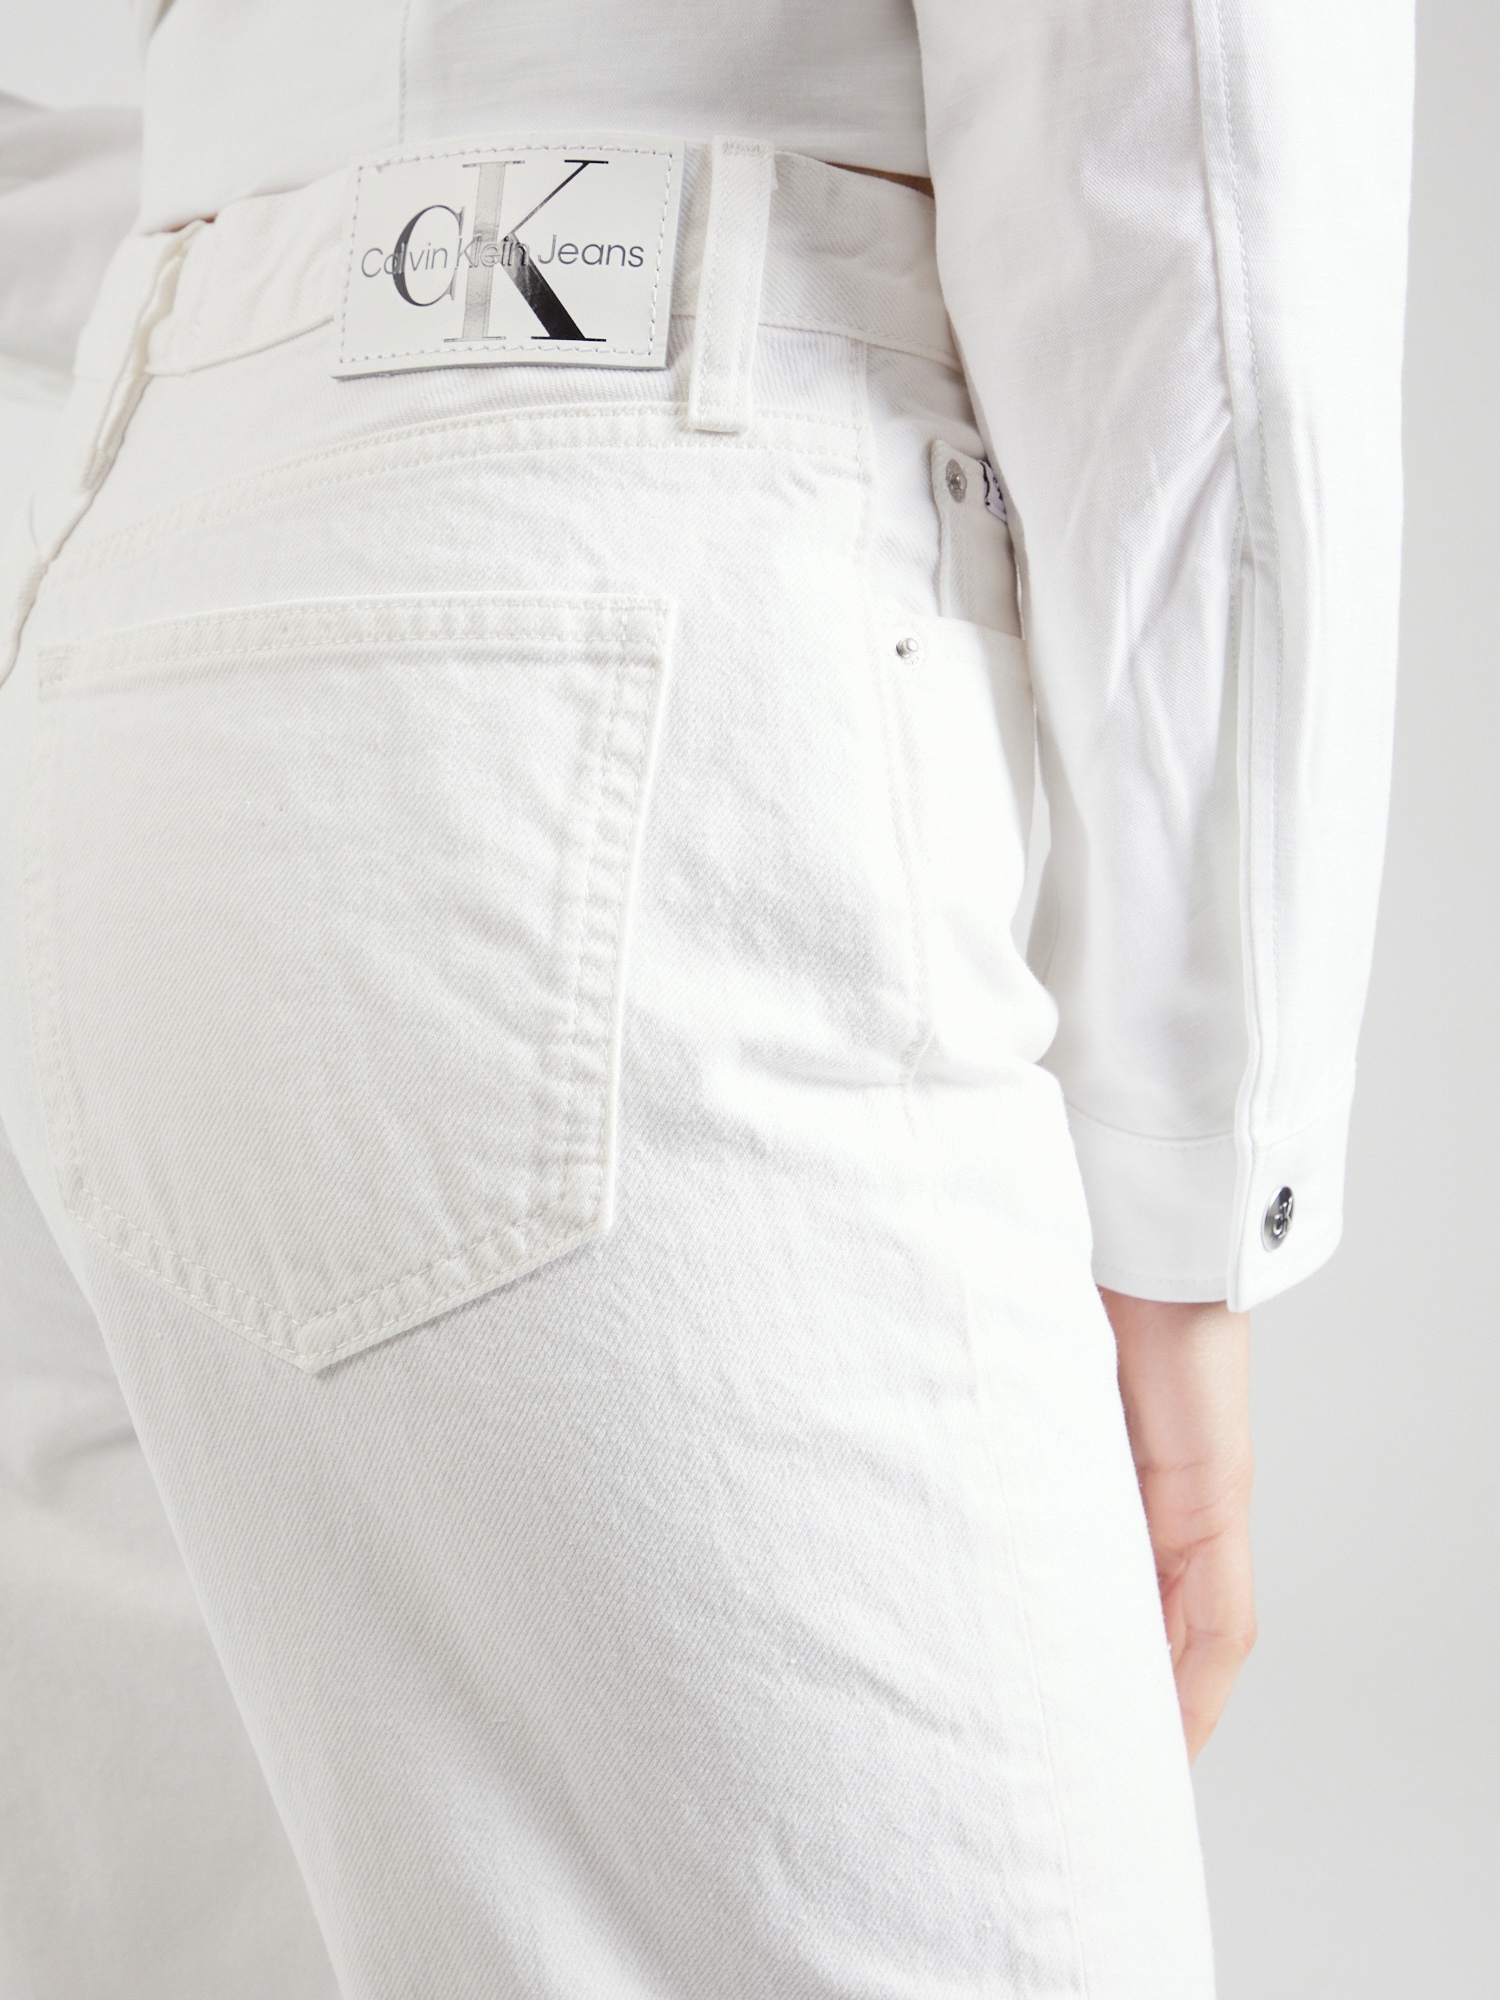 Jeans 'AUTHENTIC' von Calvin Klein Jeans